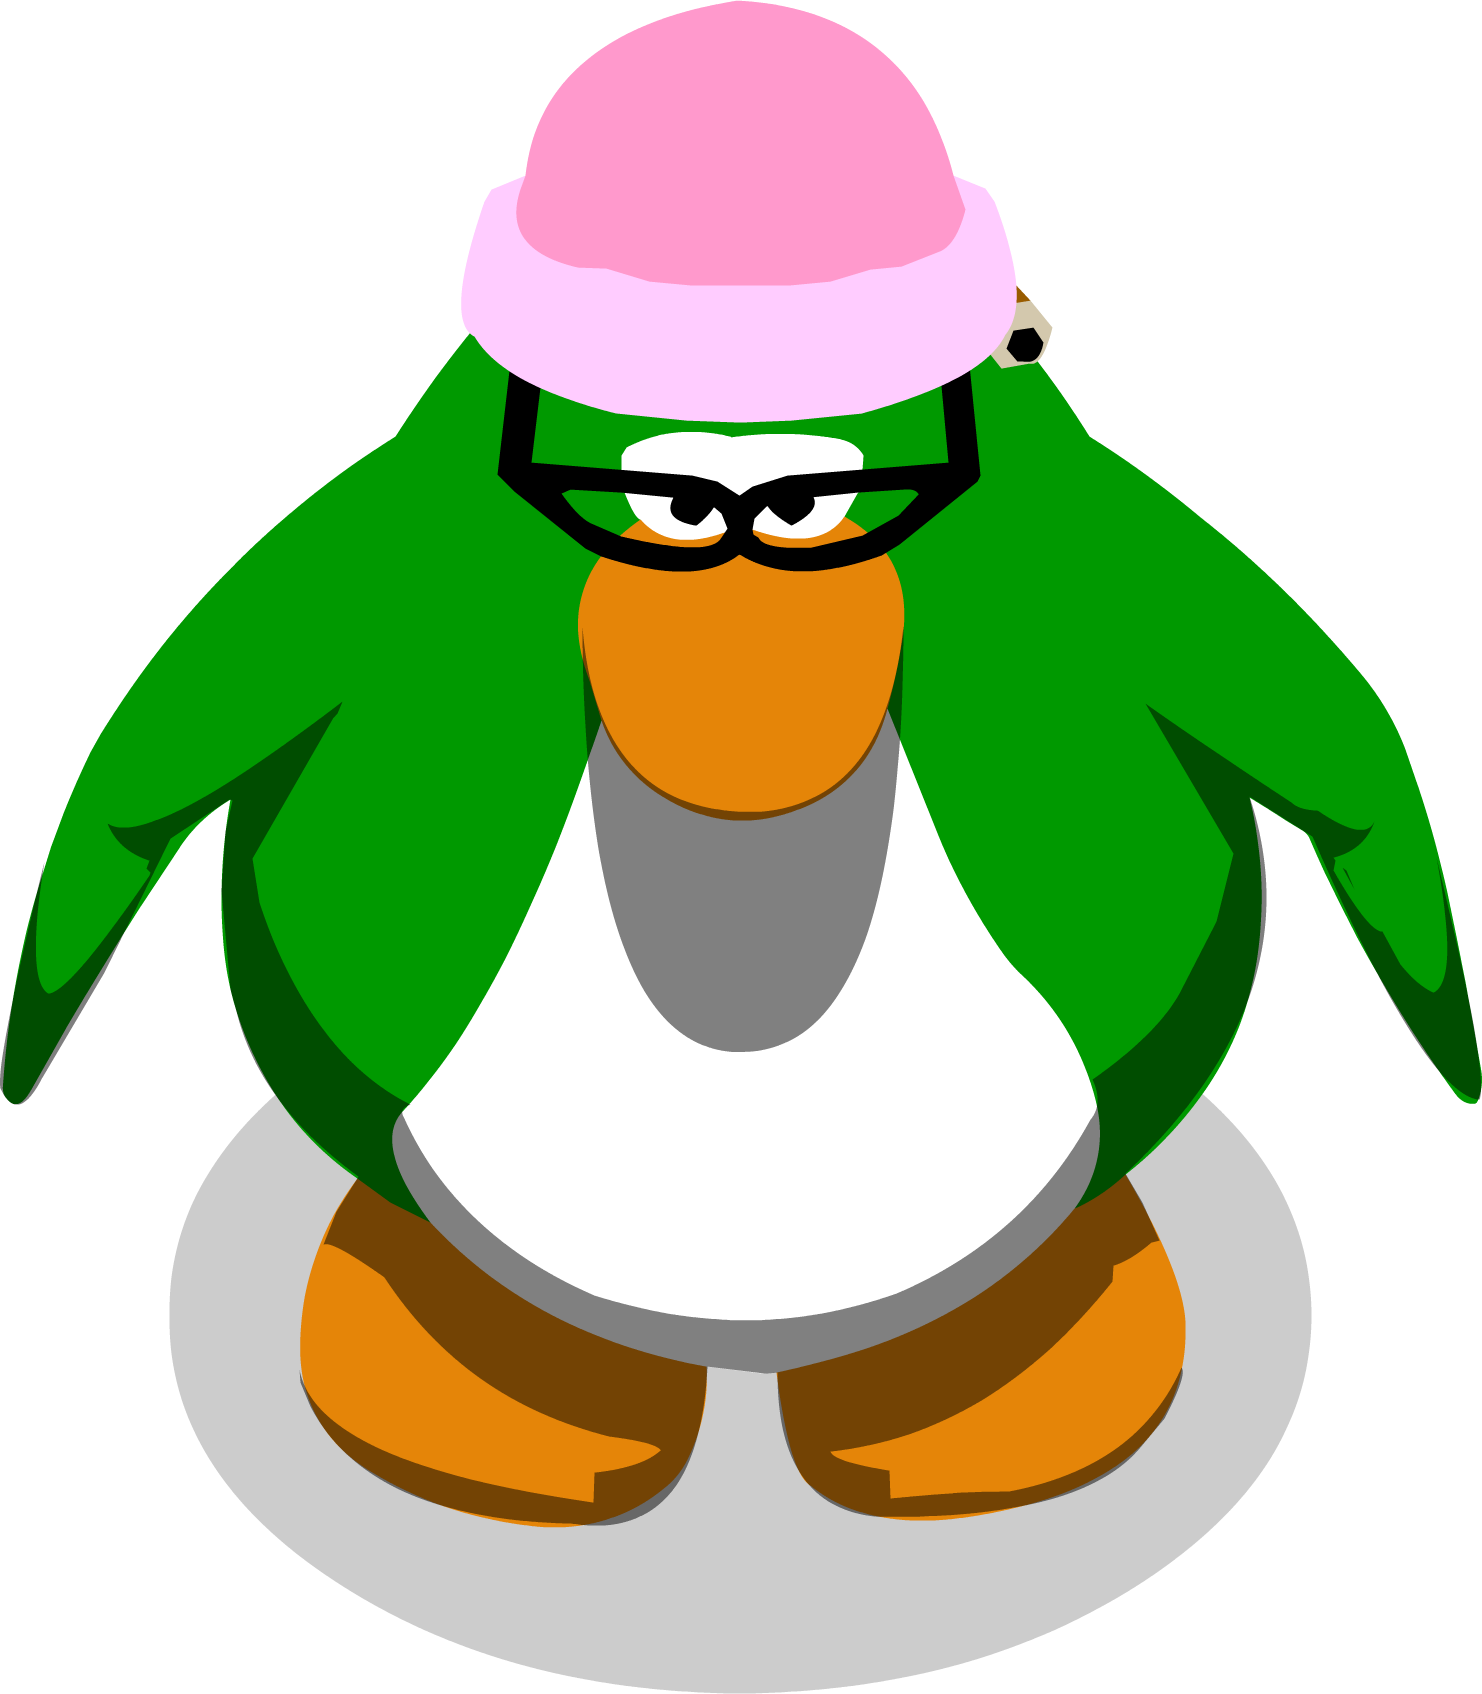 Aunt Arctic Sprites Original - Club Penguin Gary In Game (1482x1694)